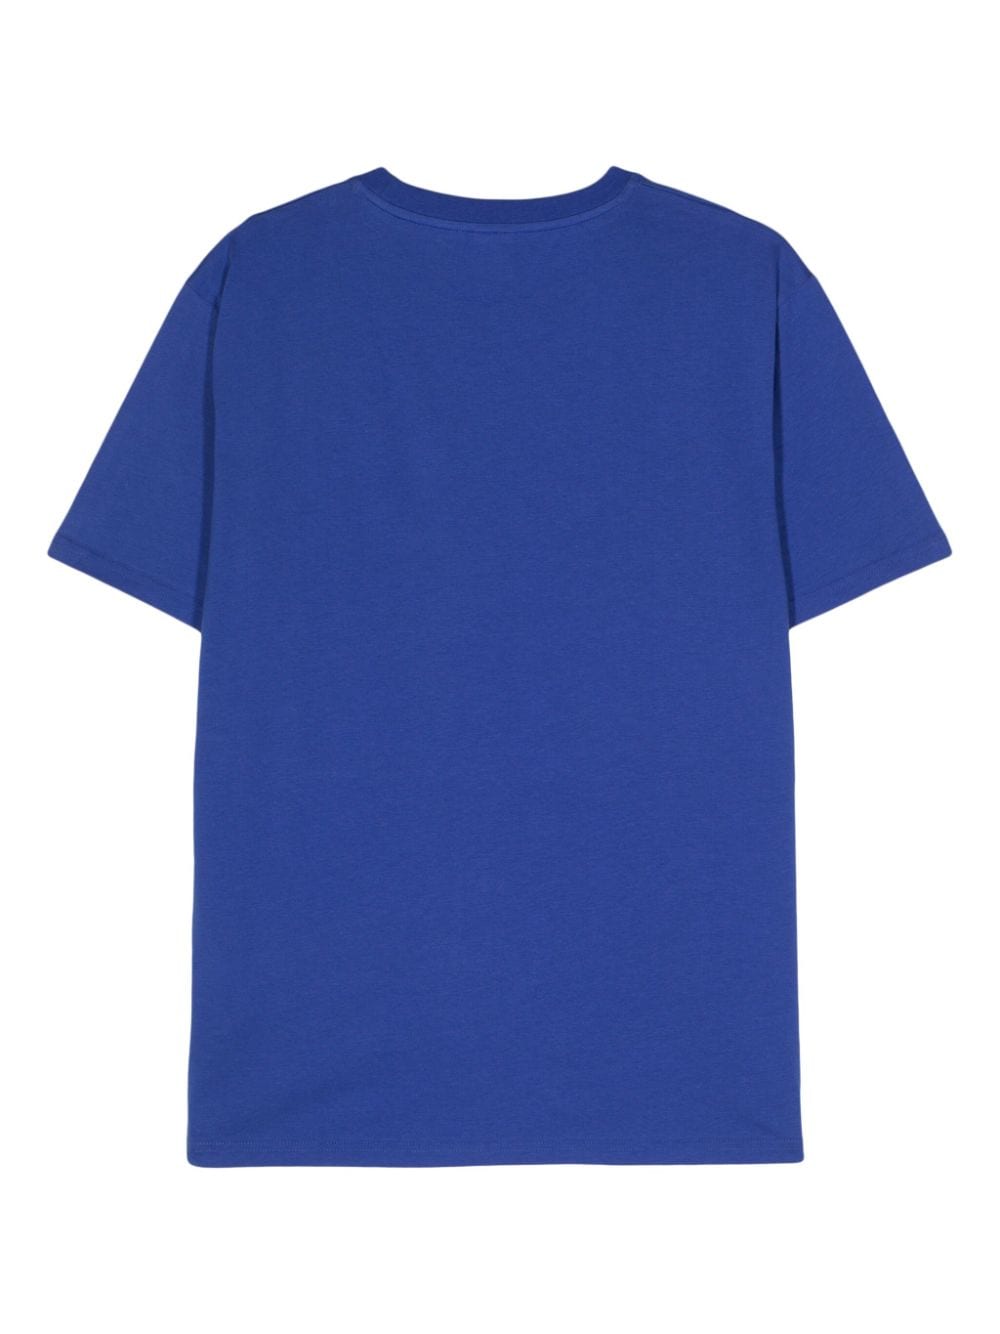 Peuterey Lapoint Palm Reg cotton T-shirt - Blauw